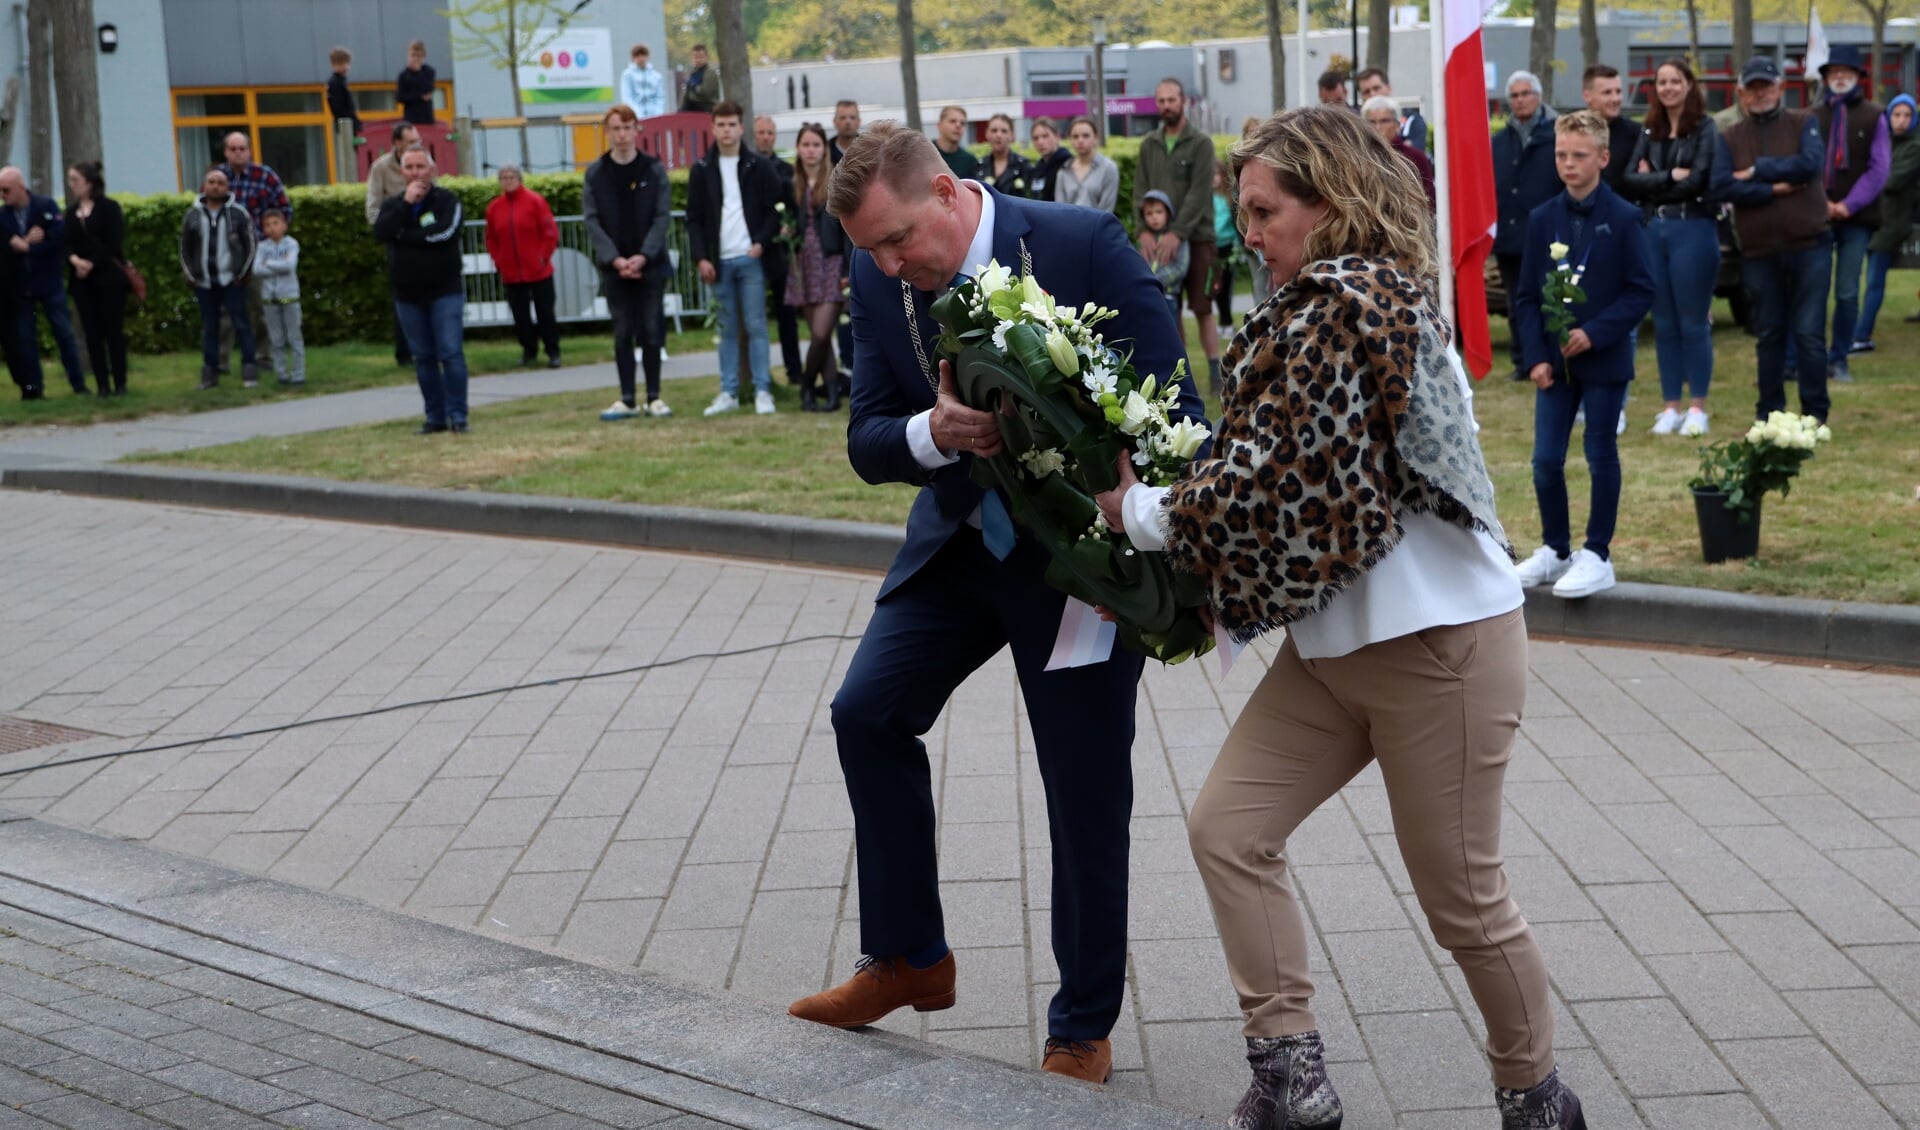 burgemeester Dijksterhuis van de gemeente Borsele legt een krans met zijn echtgenote